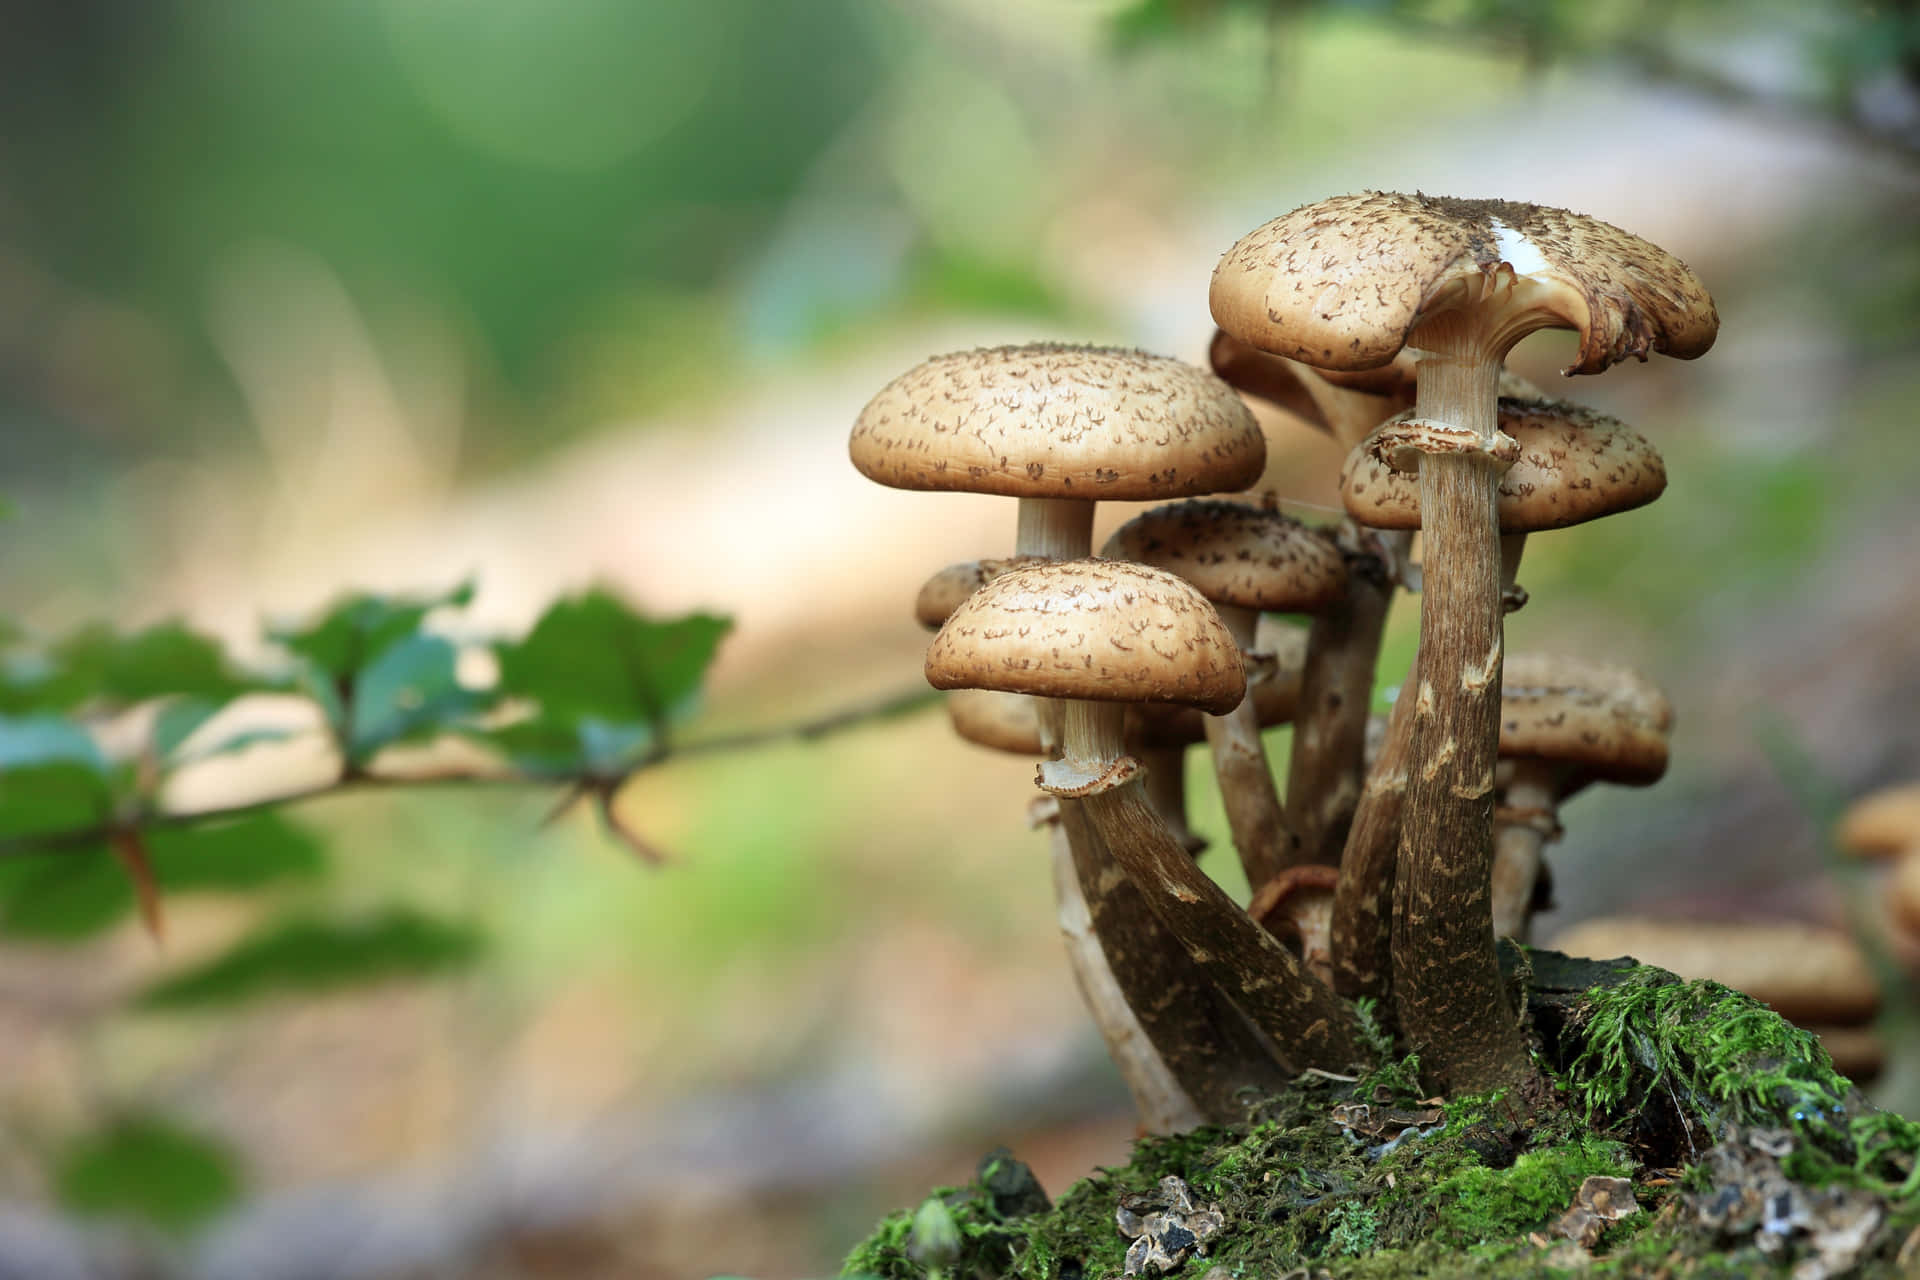 Mushroom billeder spredt over tapetet.